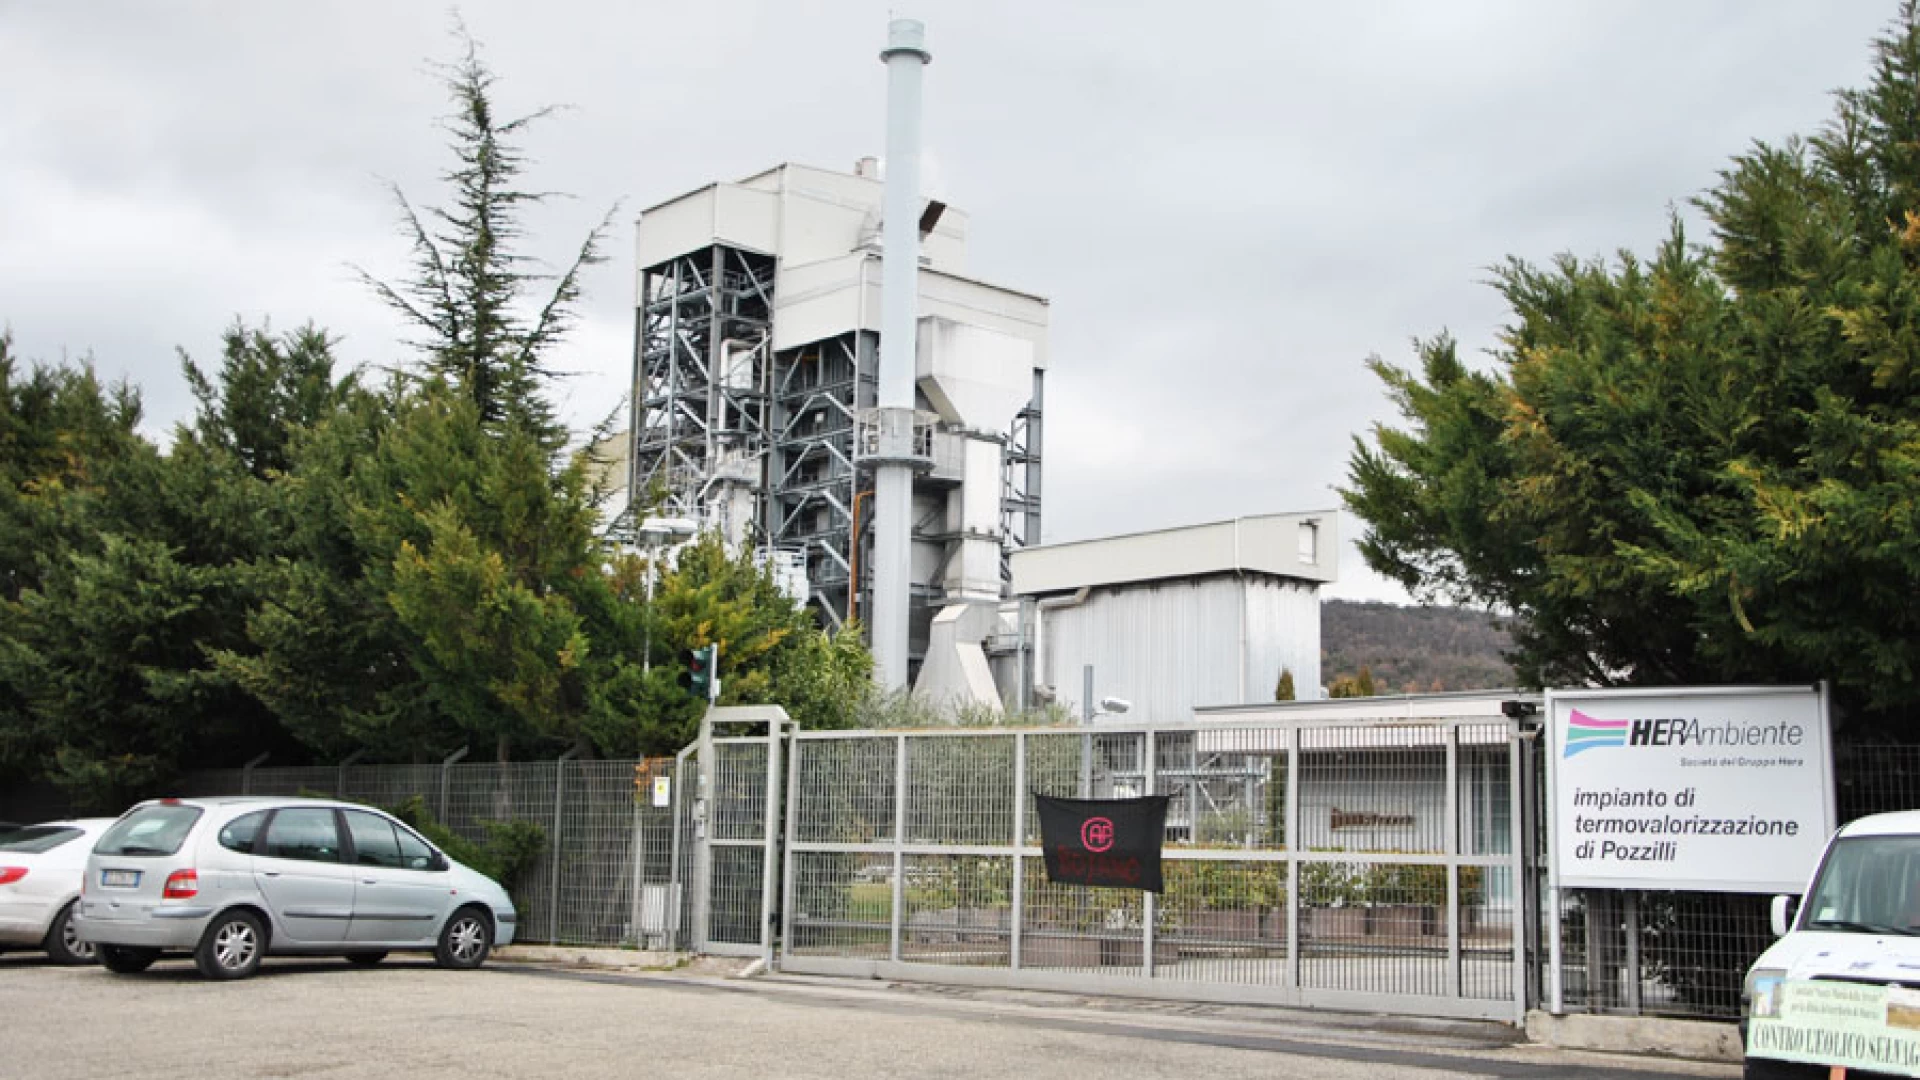 Pozzilli: “L’inceneritore deve essere chiuso”. Stefano Buono di Molise Democratico interviene bruscamente sulla vicenda rifiuti.